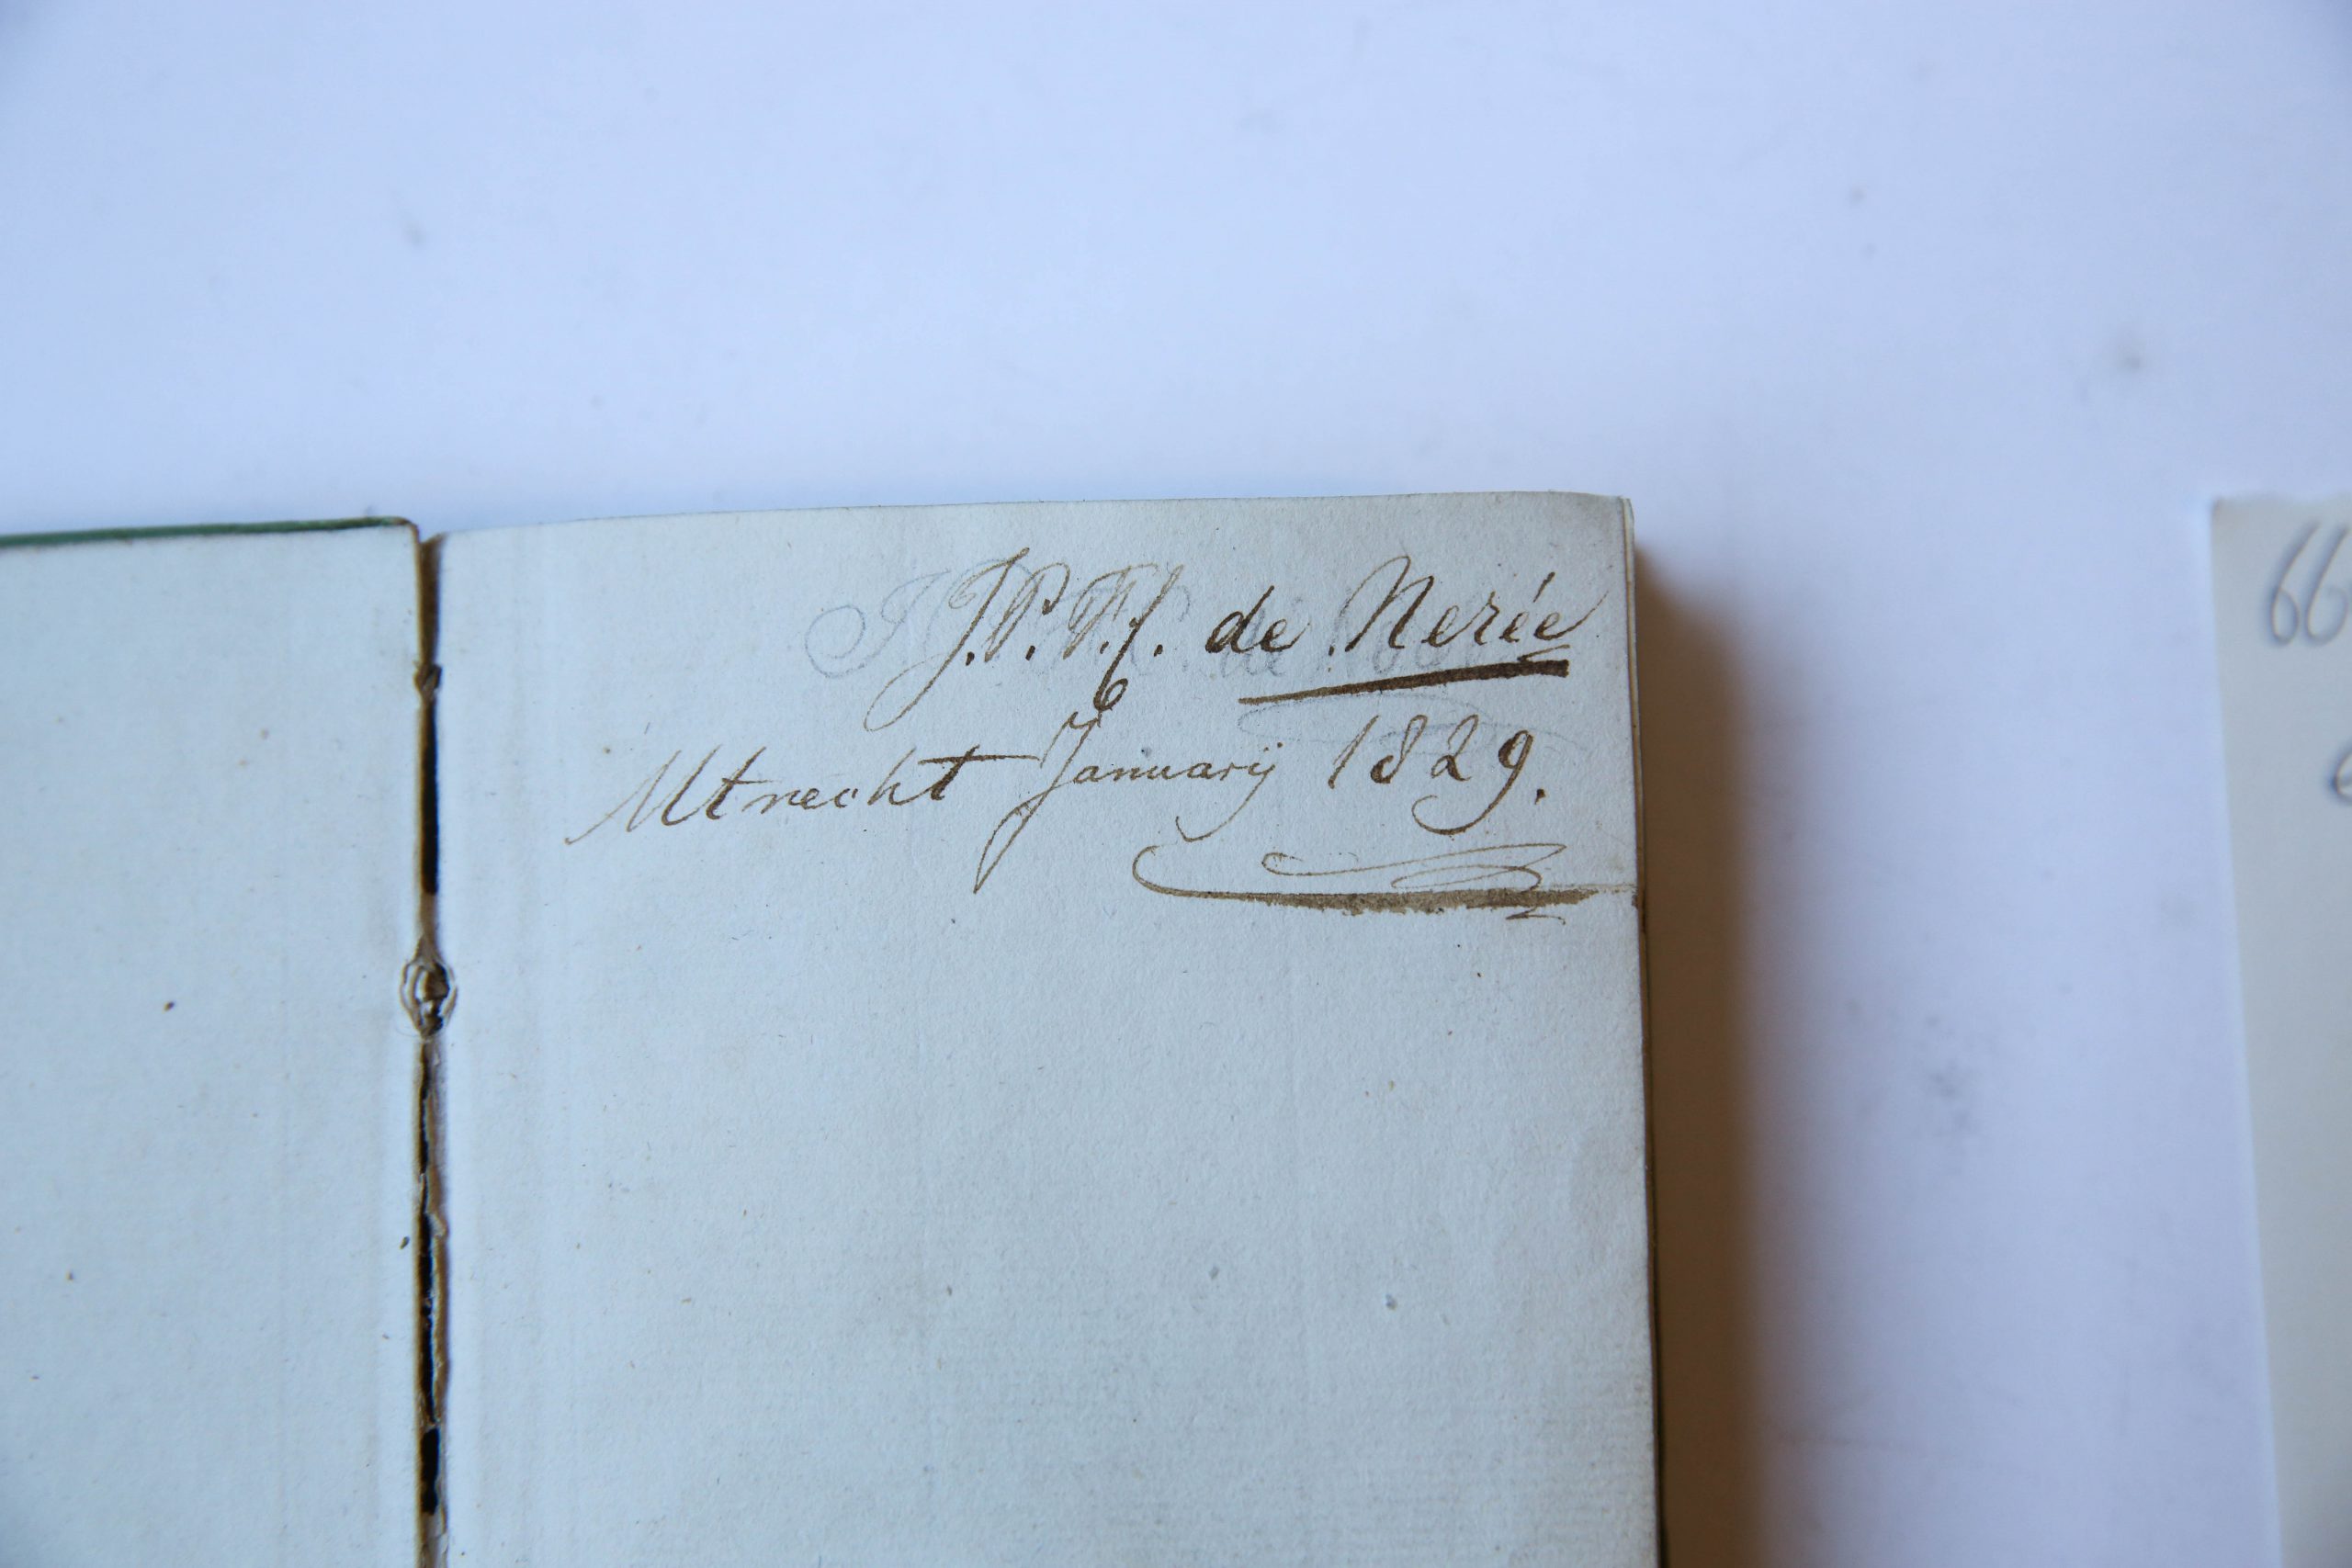 Utrechtsche Studenten Almanak voor het jaar 1829, Utrecht J. van Schoonhoven en N. van der Monde, 160 pp.